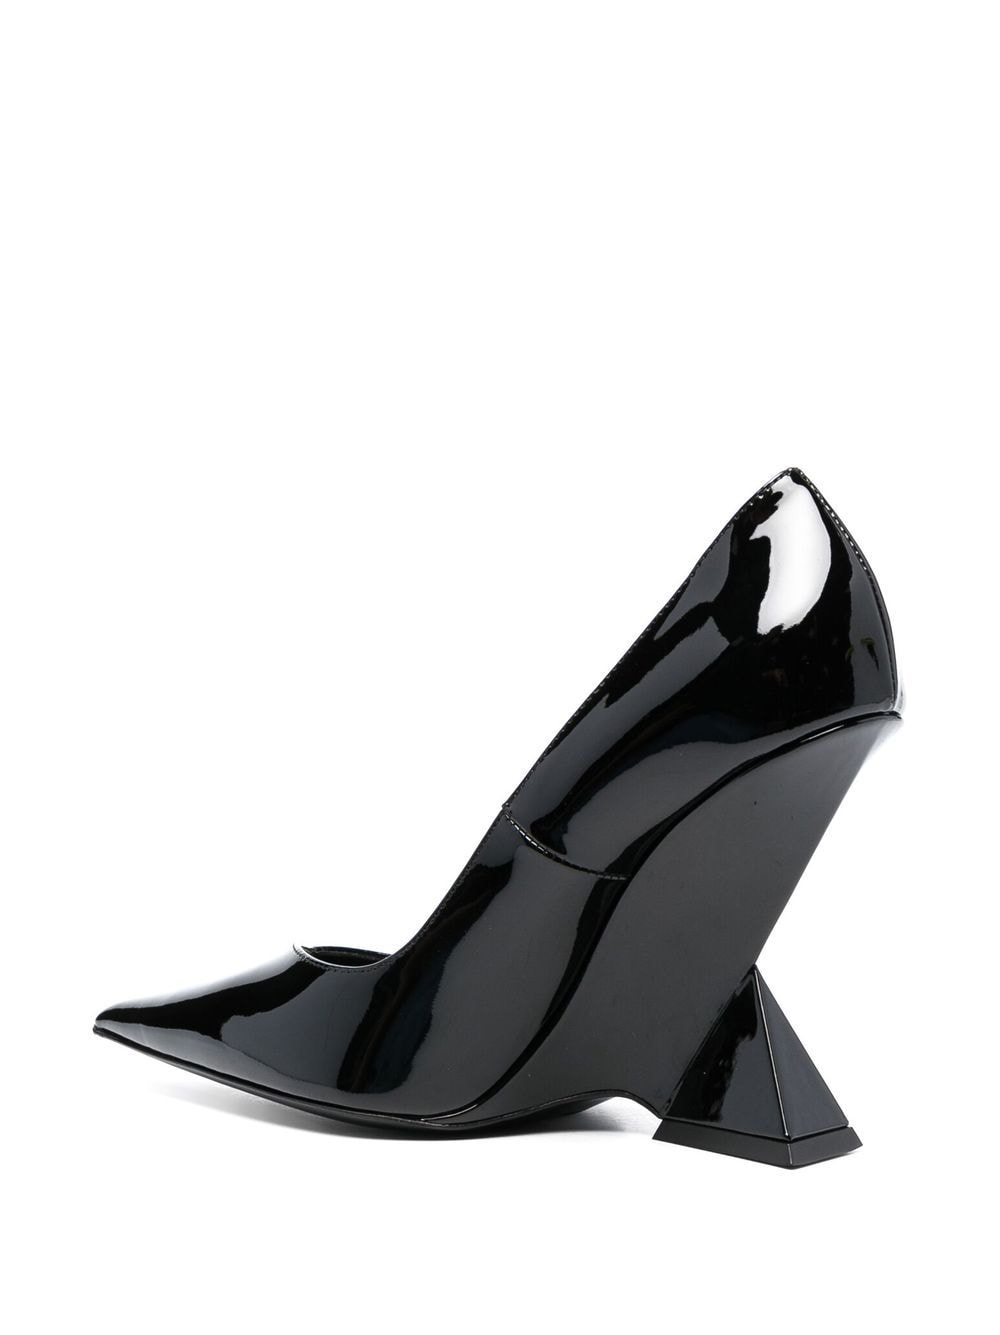 黑色專利皮革高跟鞋 - 105毫米高跟-為女人而設的秋冬'23系列